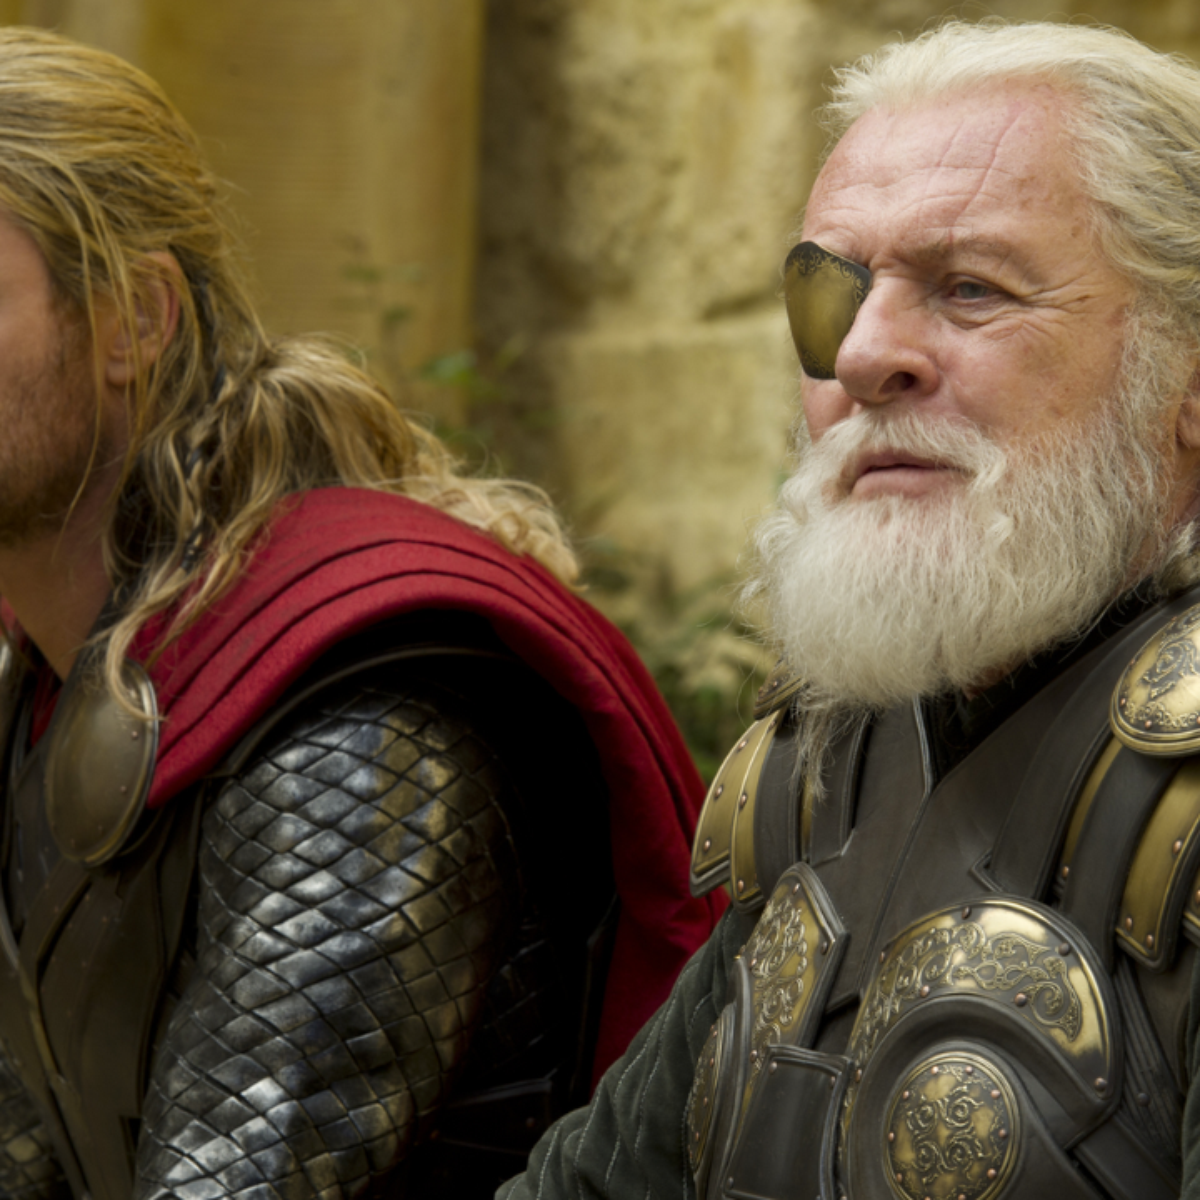 O ator Anthony Hopkins deve interpretar Odin, pai de Thor, no filme que  começa ser rodado pela Marvel e que deve estrear no final de 2010. -  Glamurama